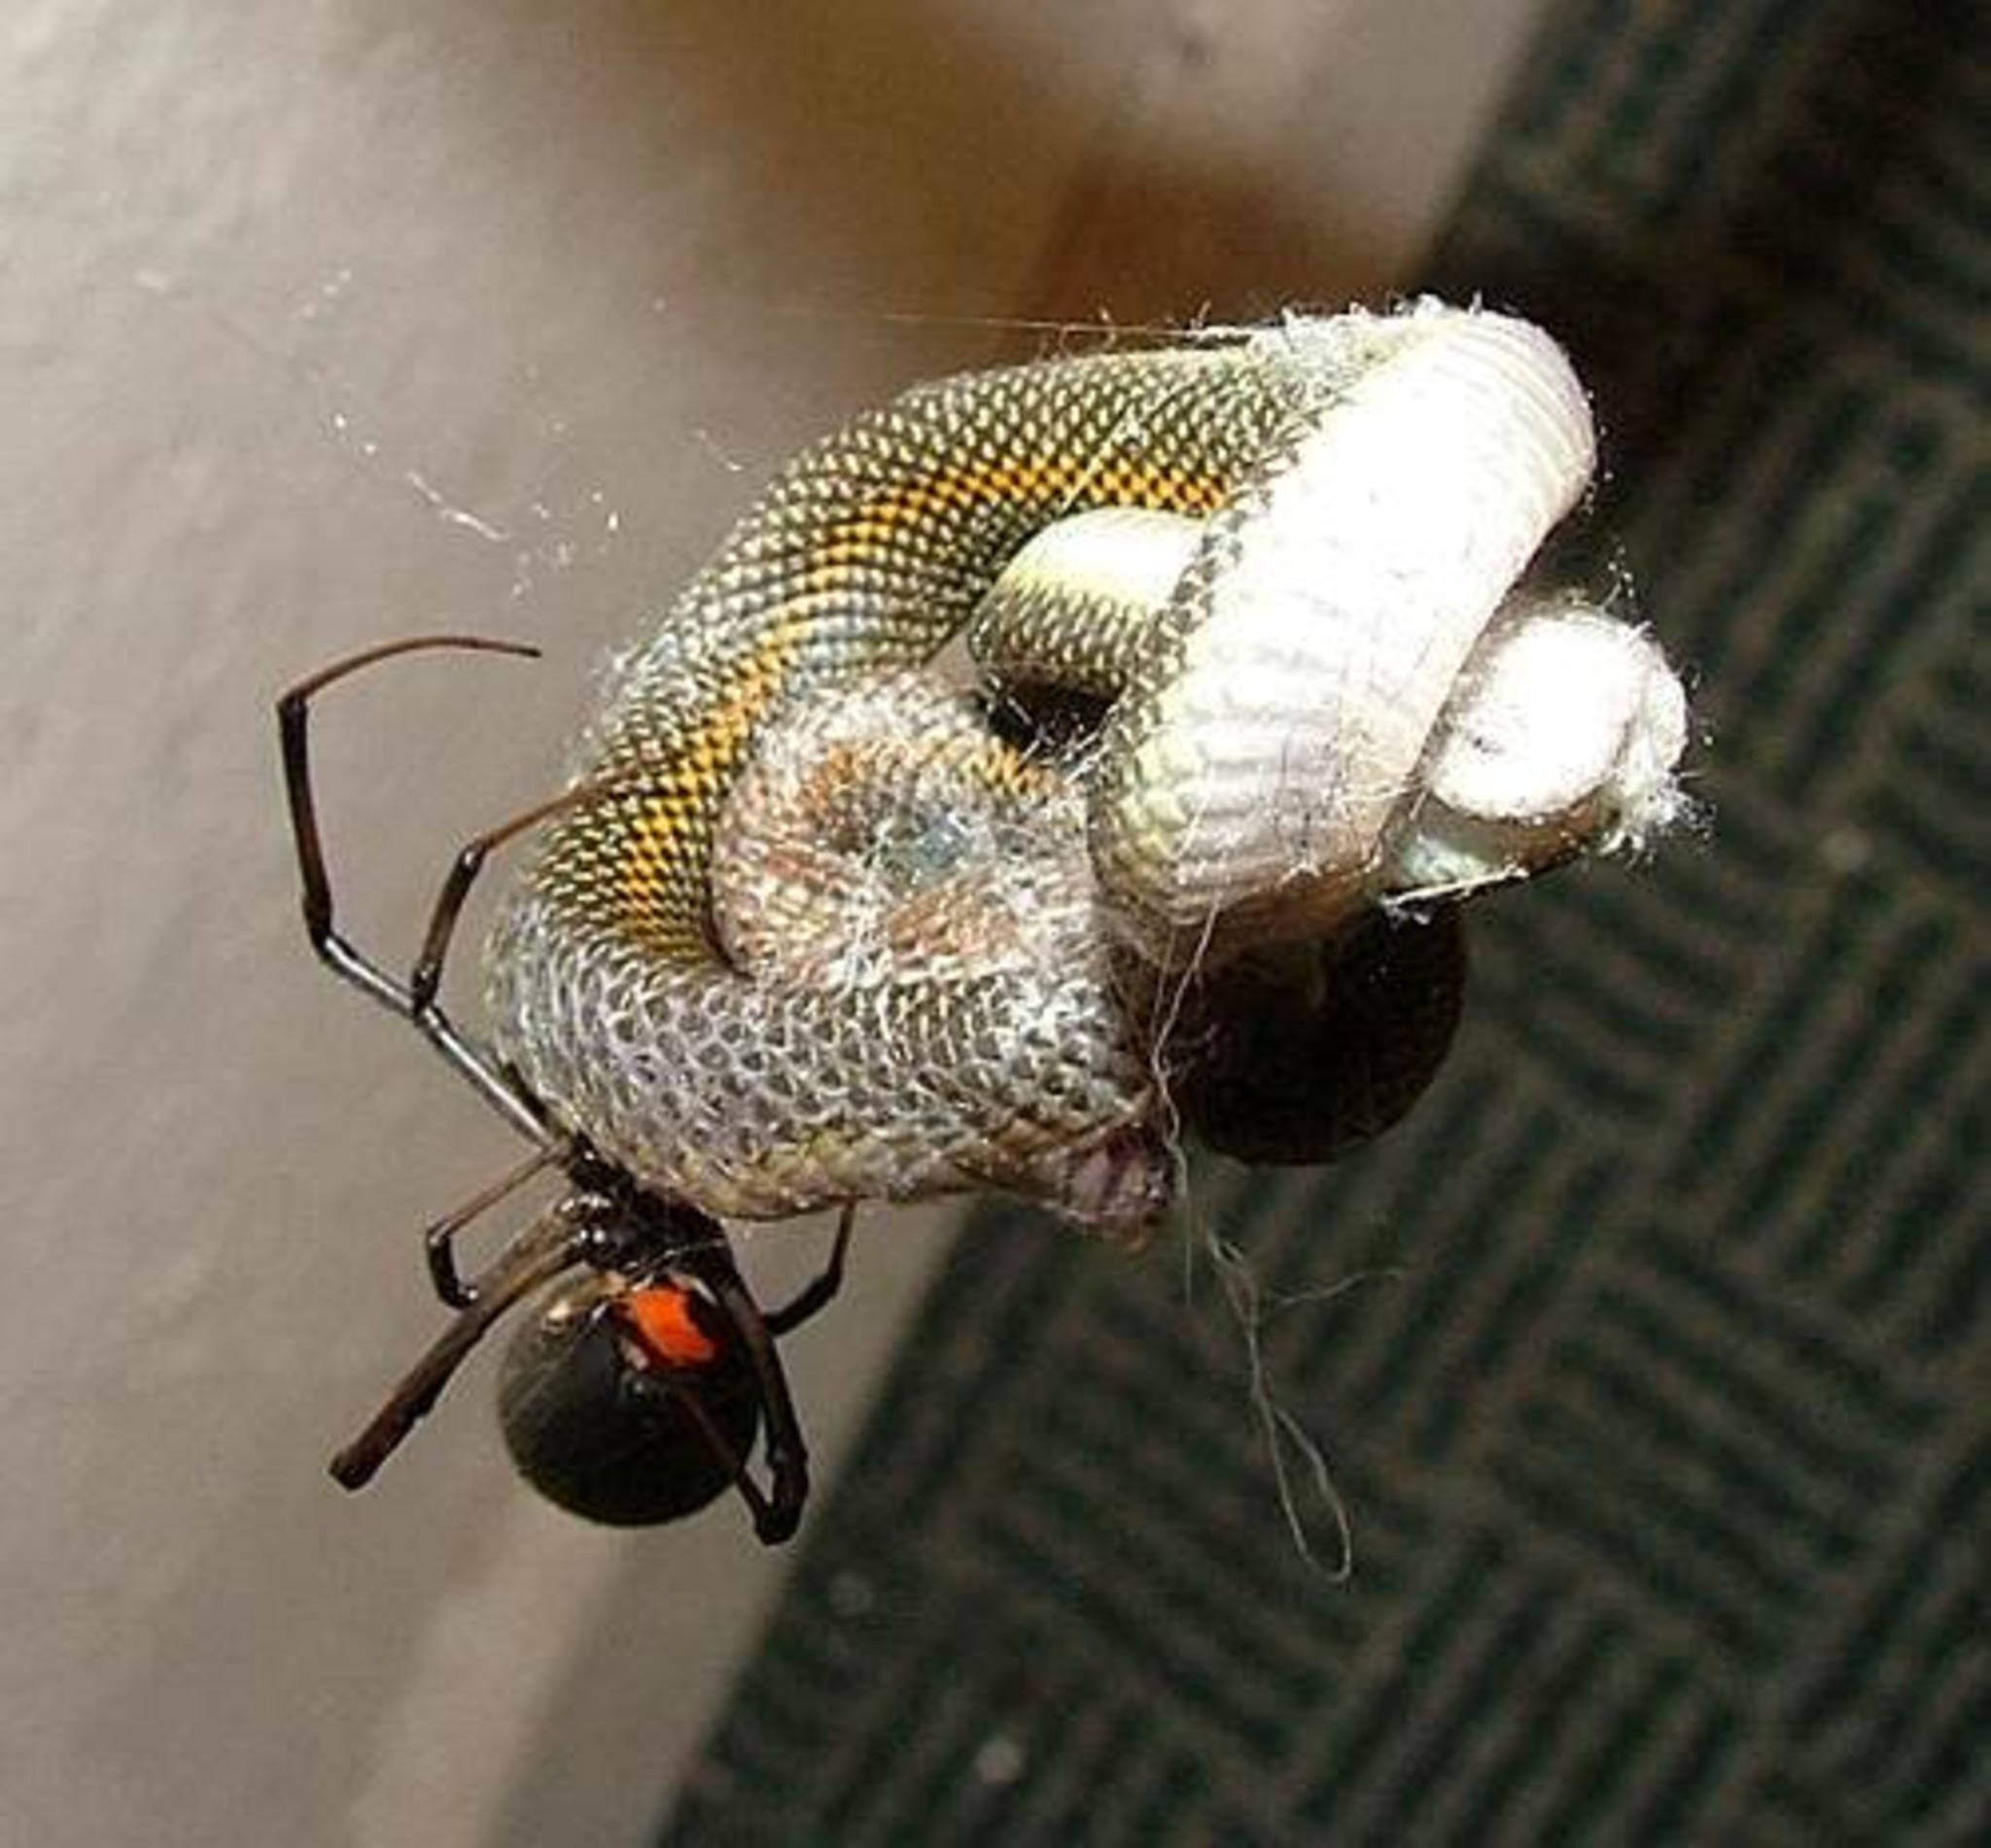 Black widow spider fette in lytse slang